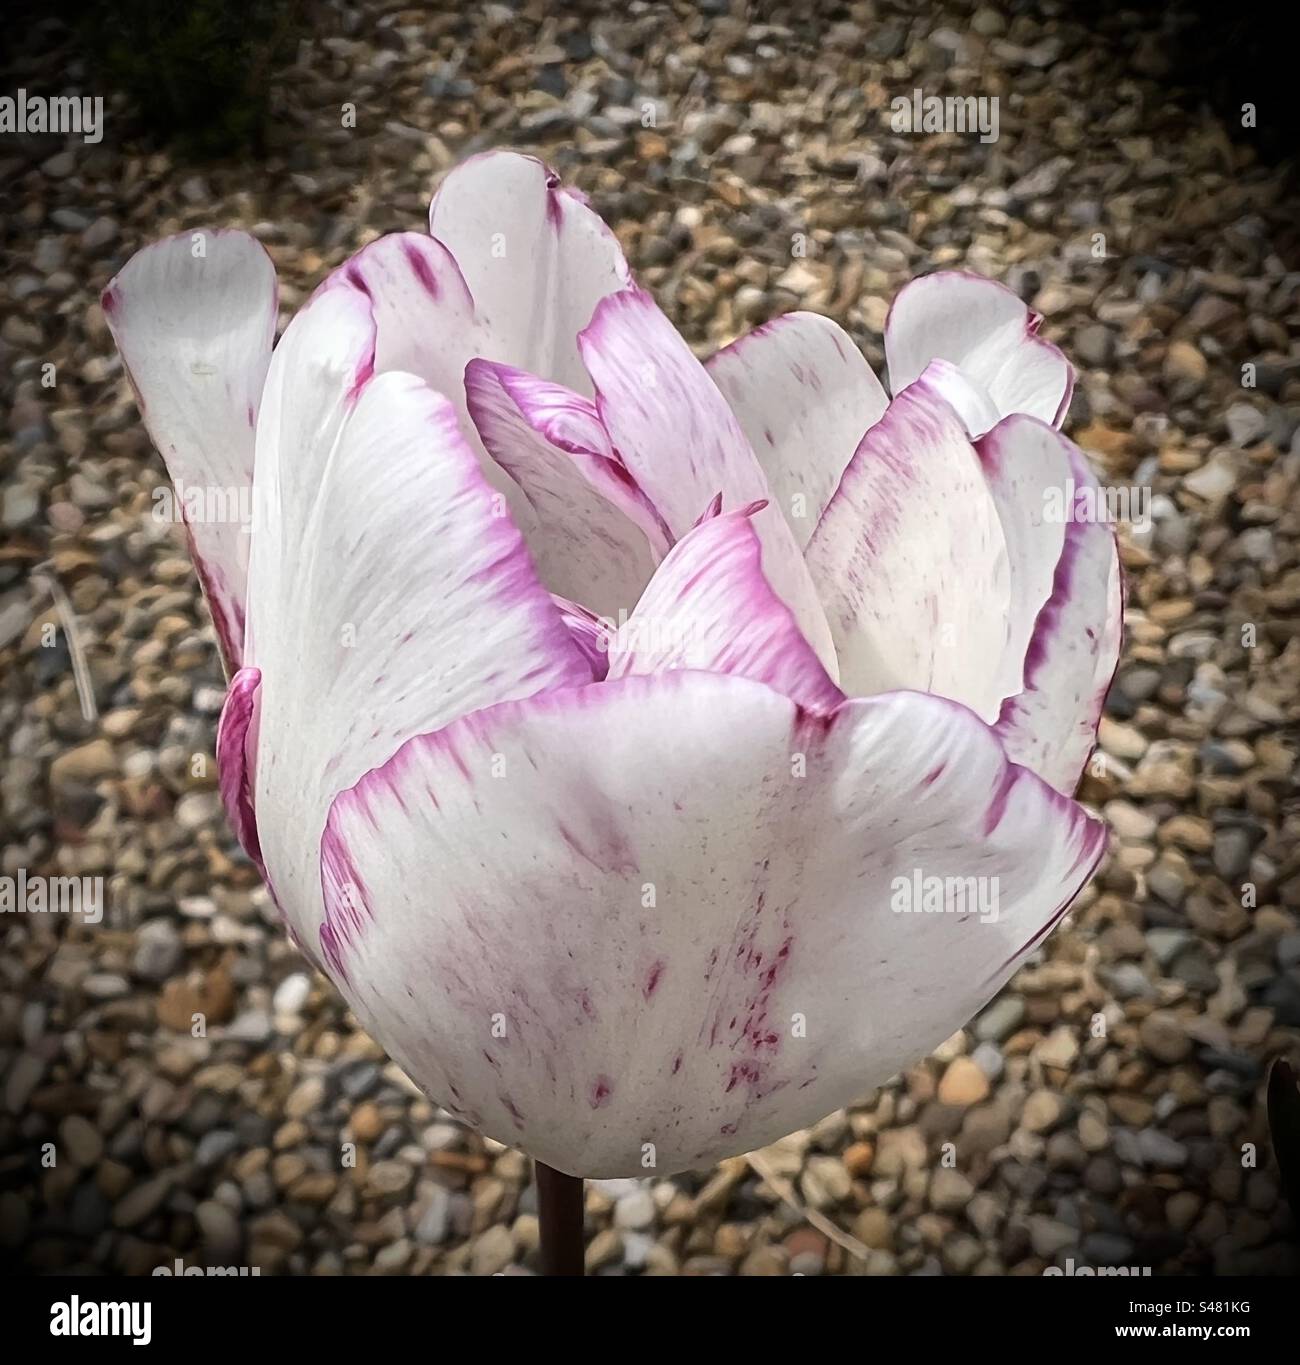 Tulipe blanche simple avec des bords roses Banque D'Images